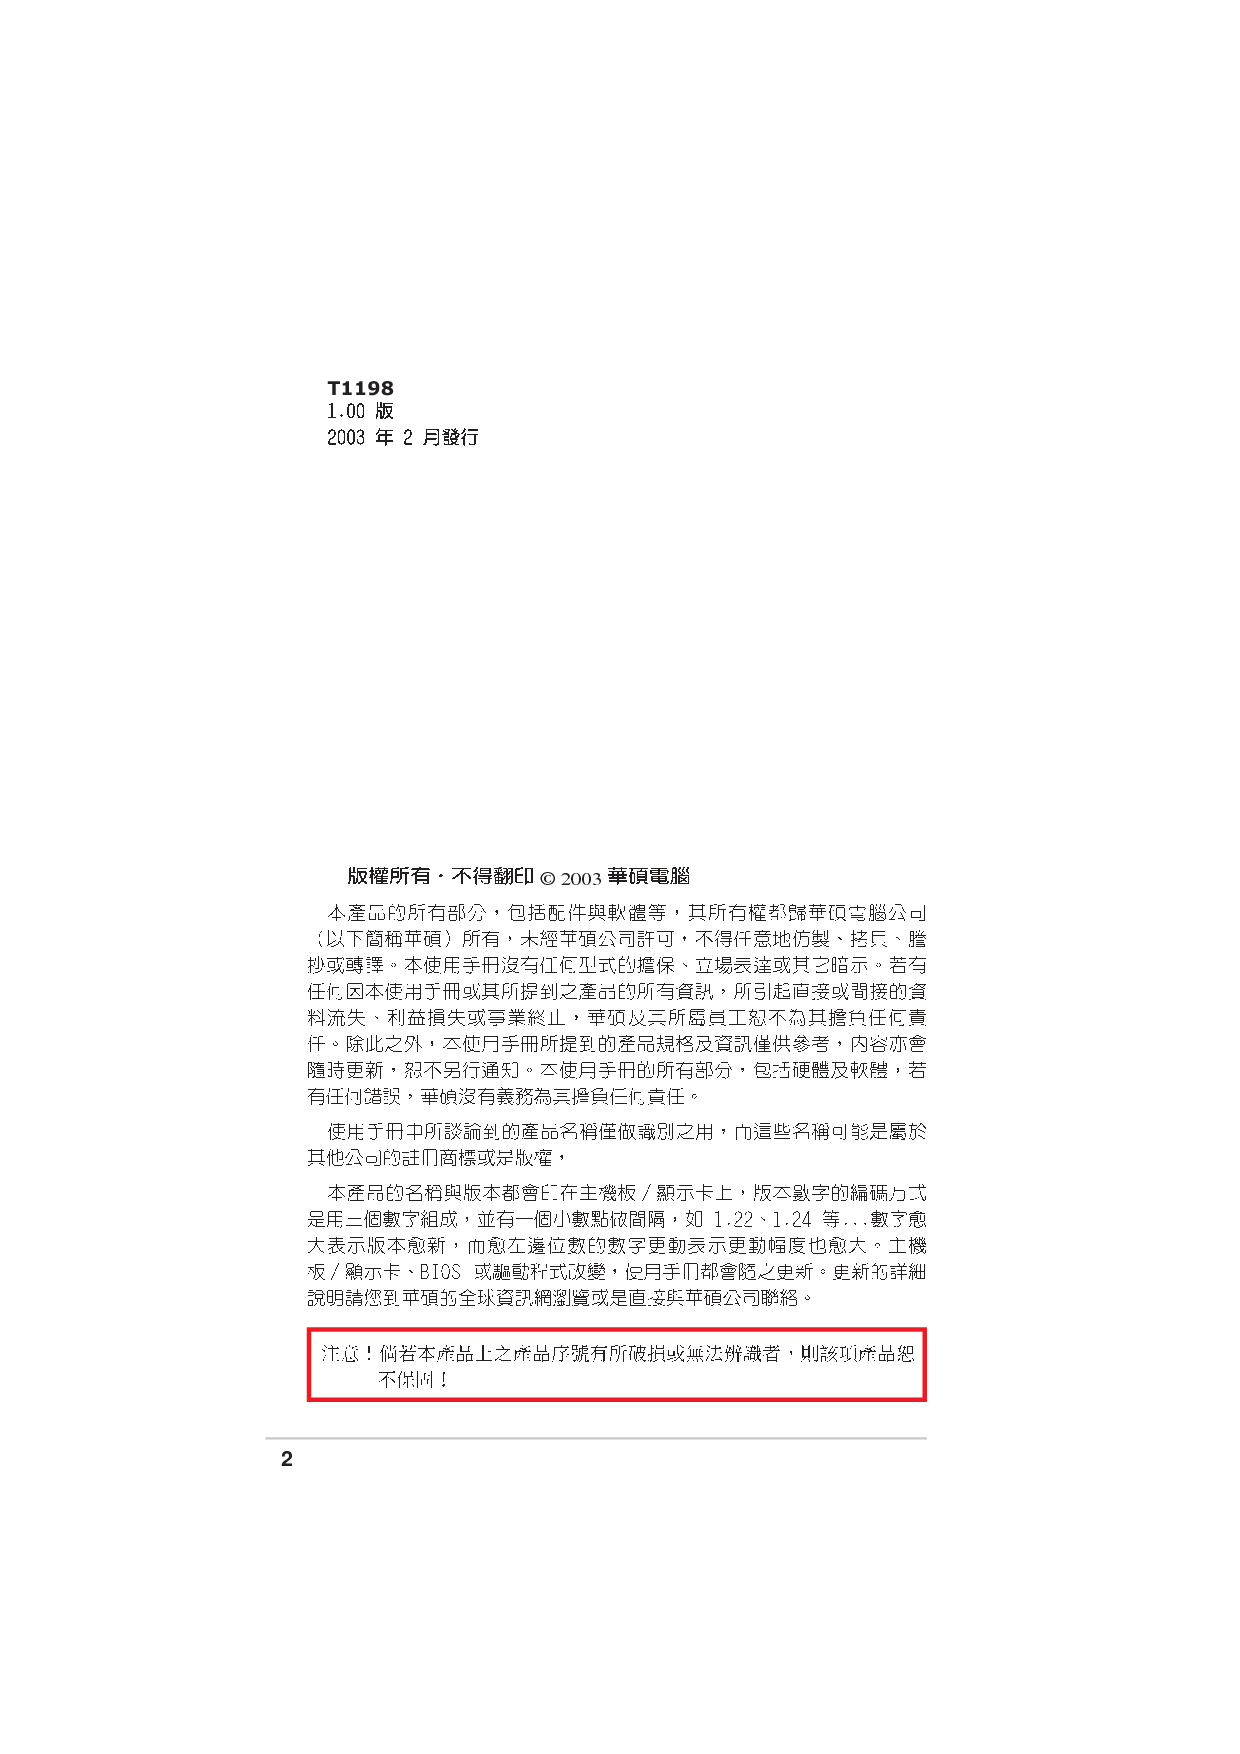 华硕 Asus A7V8X-X 用户手册 第1页